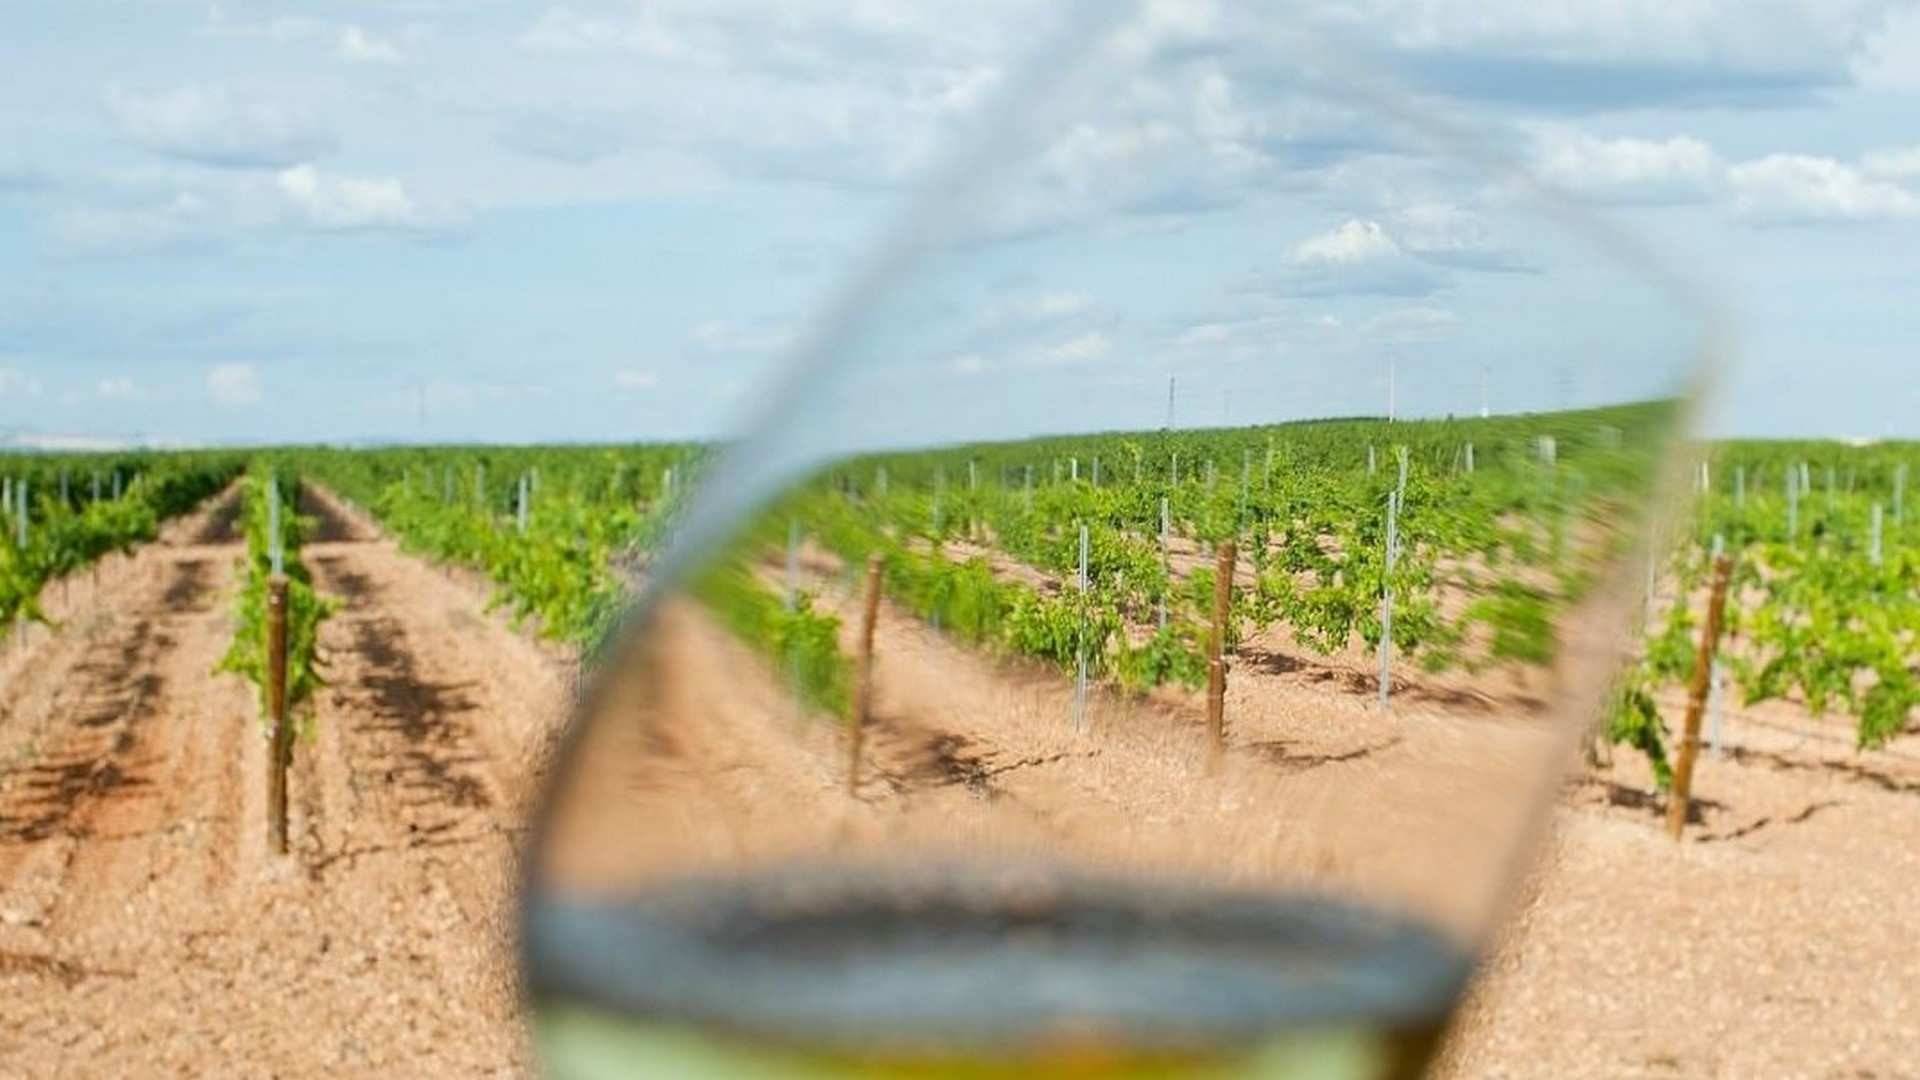 la D.O. Rueda es una de las denominaciones de origen vínicas más antiguas del país, la más antigua de Castilla y León, y cuenta con viñedos antiguos que hay que poner en valor